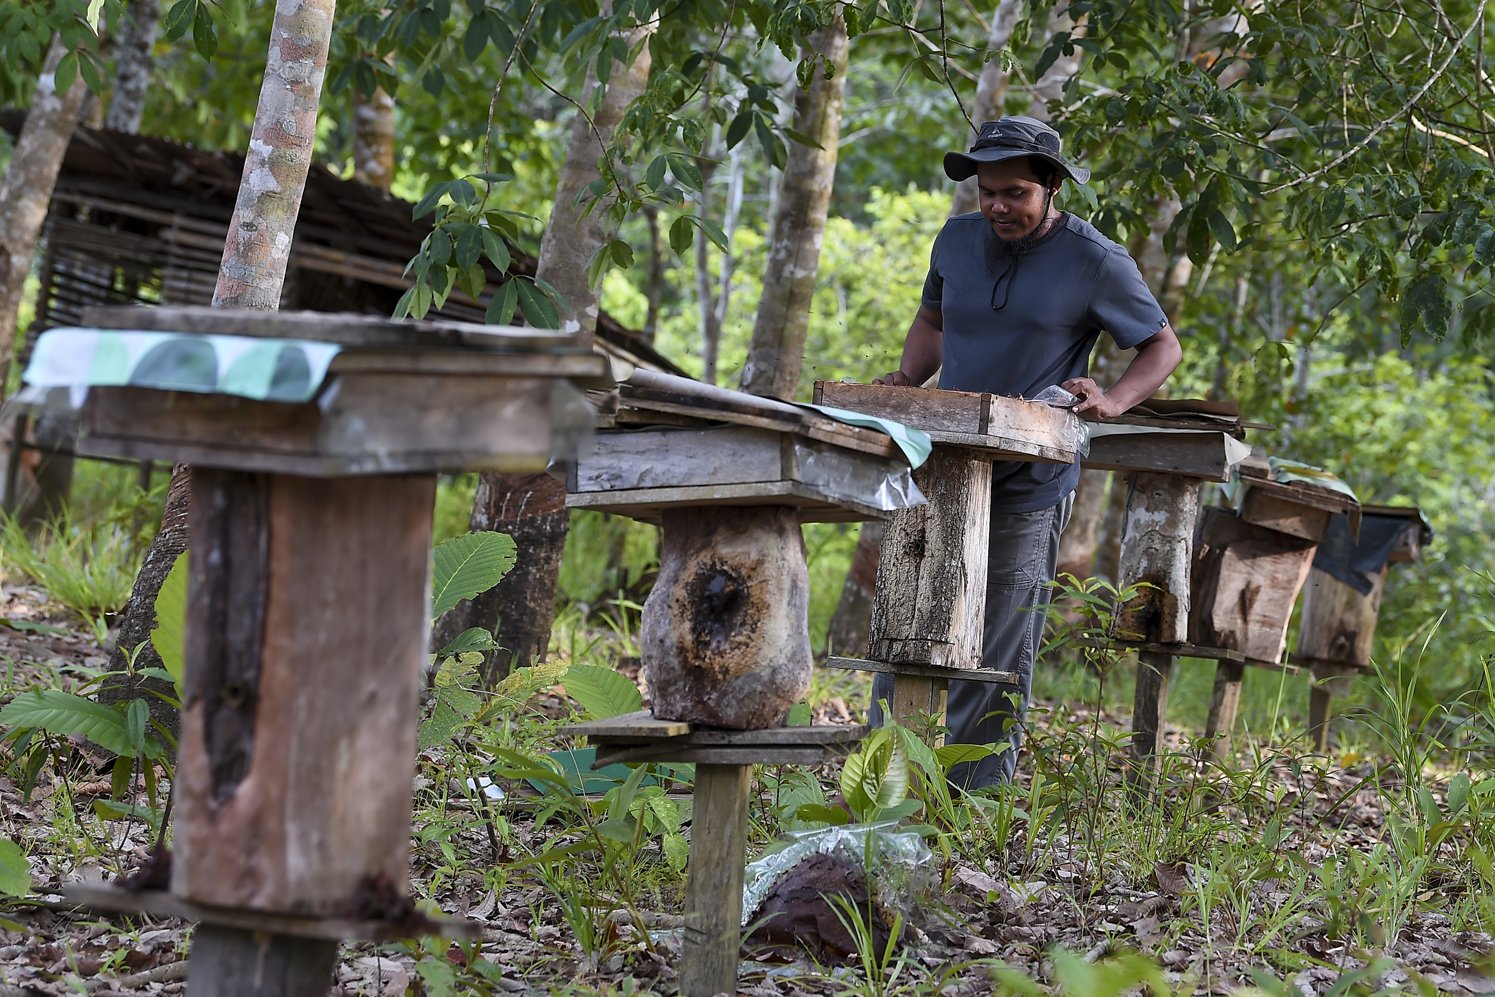 Togos Naho (30) memeriksa lebah madu Kelulut (Trigona itama) di tempat pembudidayaan madu di Dusun Bahta, Desa Bahta, Kecamatan Bonti, Sanggau, Kalimantan Barat. Togos memanen 600 kg madu kelulut yang merupakan masa puncak panen madu. Setiap madu yang dikemas dalam botol berukuran 150 mililiter dijual seharga Rp150 ribu.